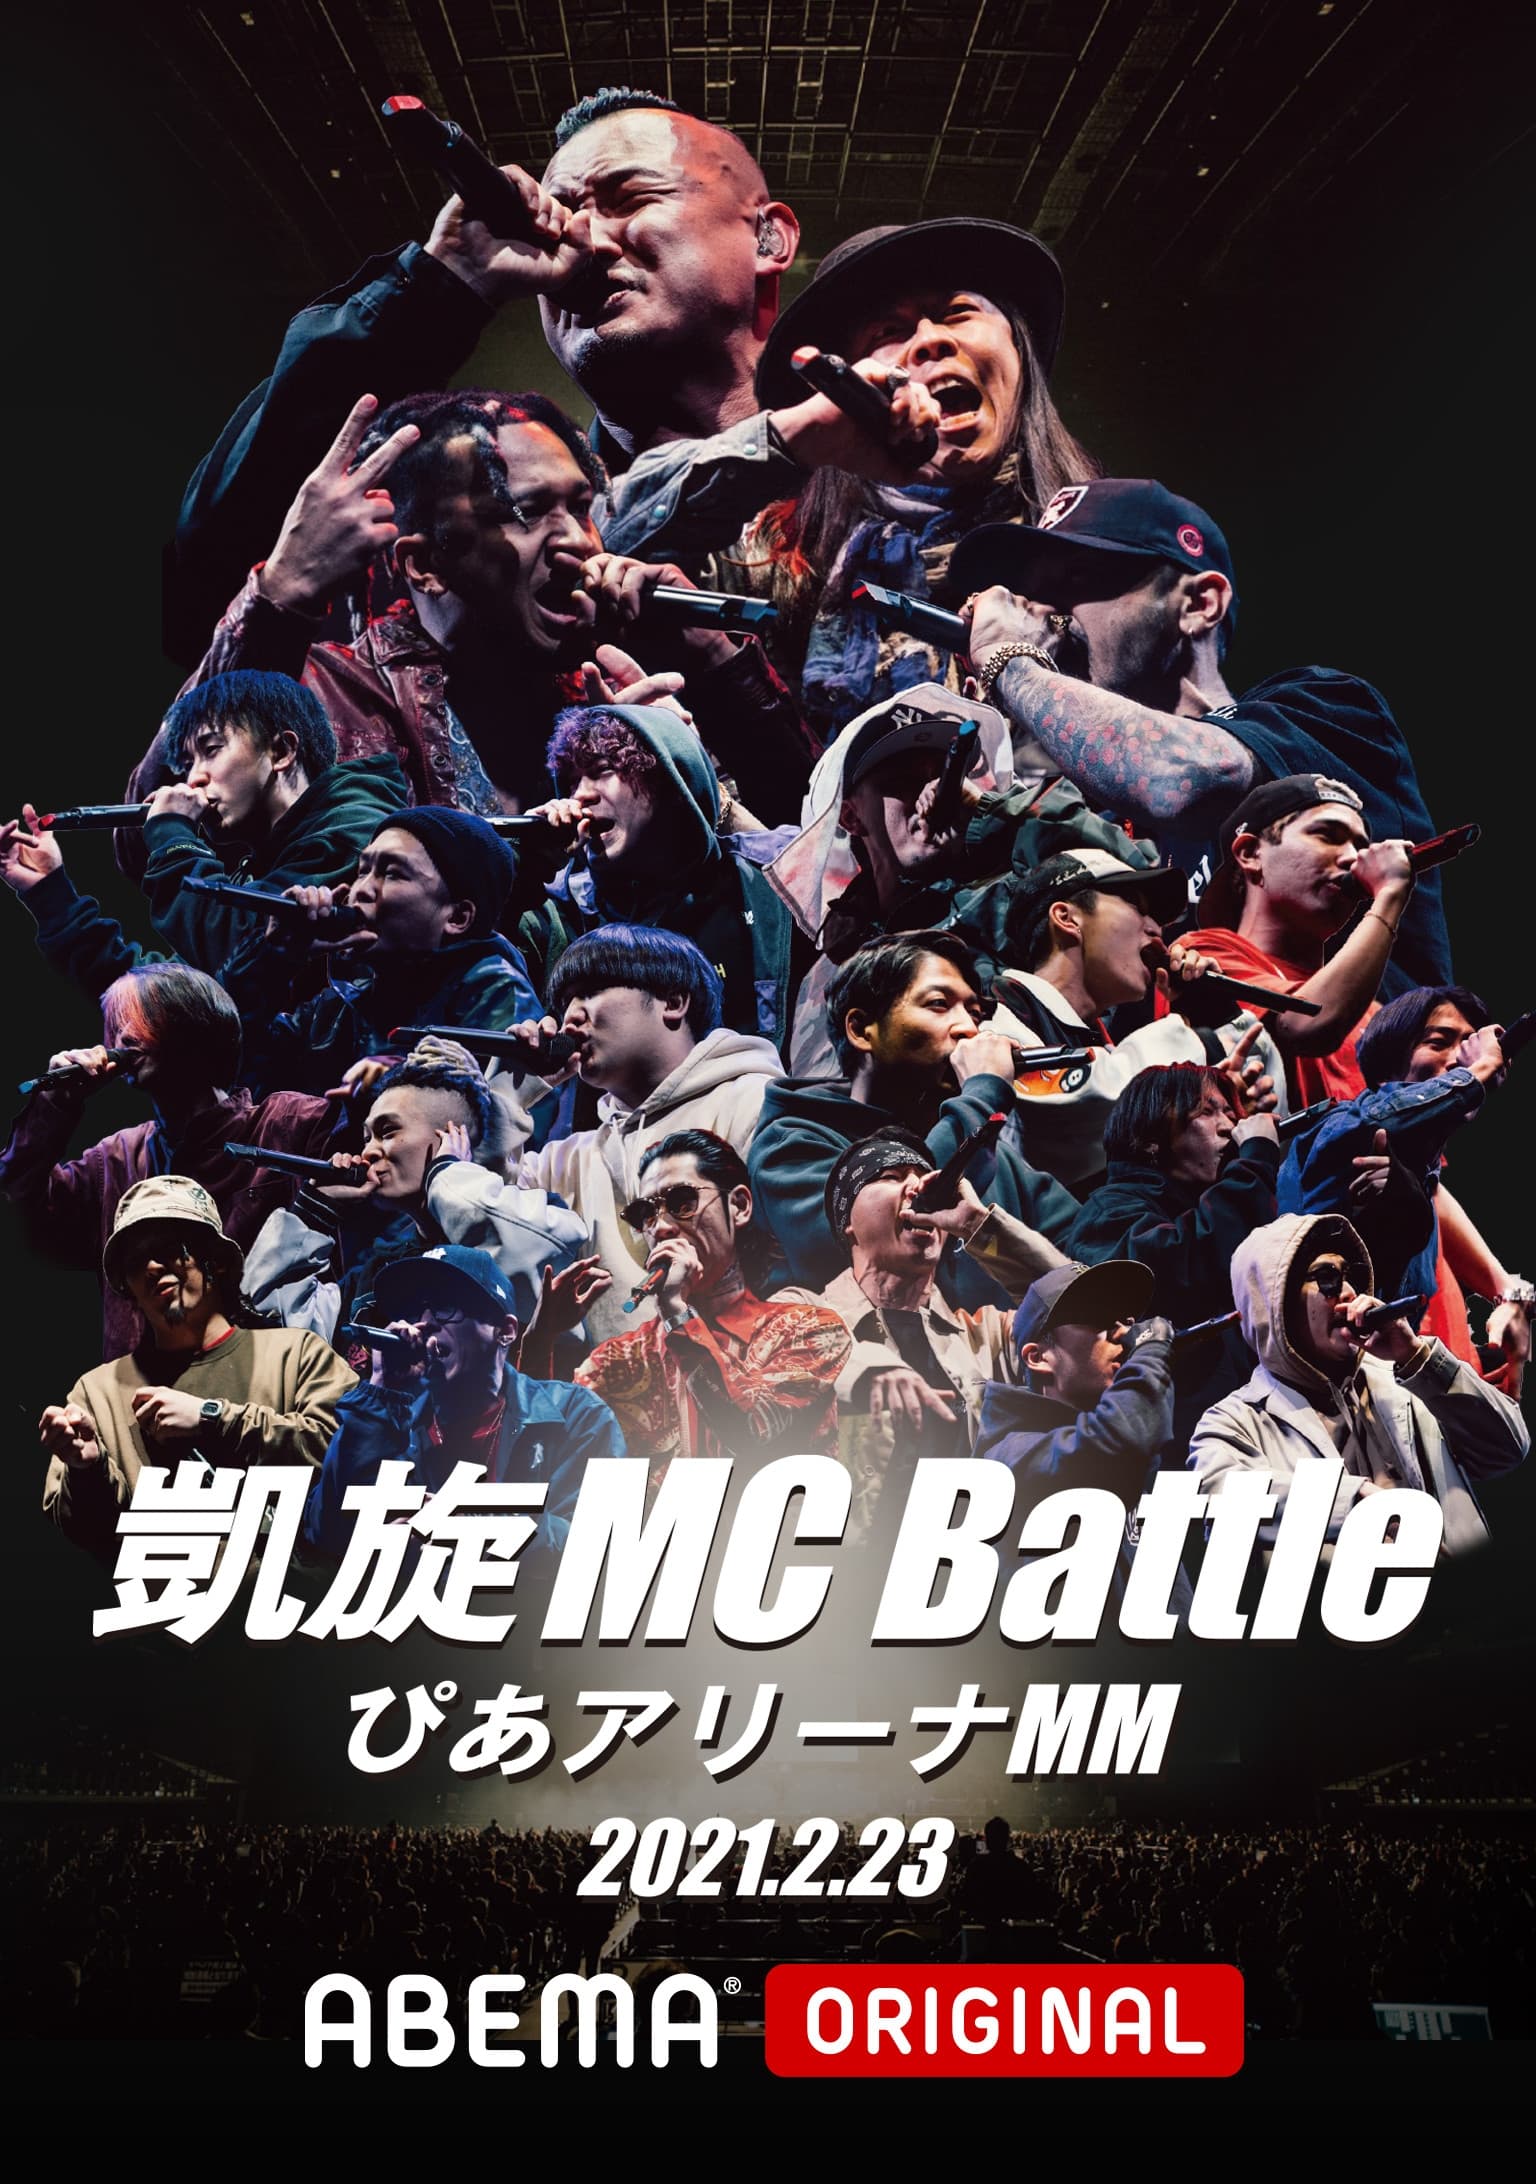 凱旋MC Battle Special アリーナノ陣 at ぴあアリーナMM